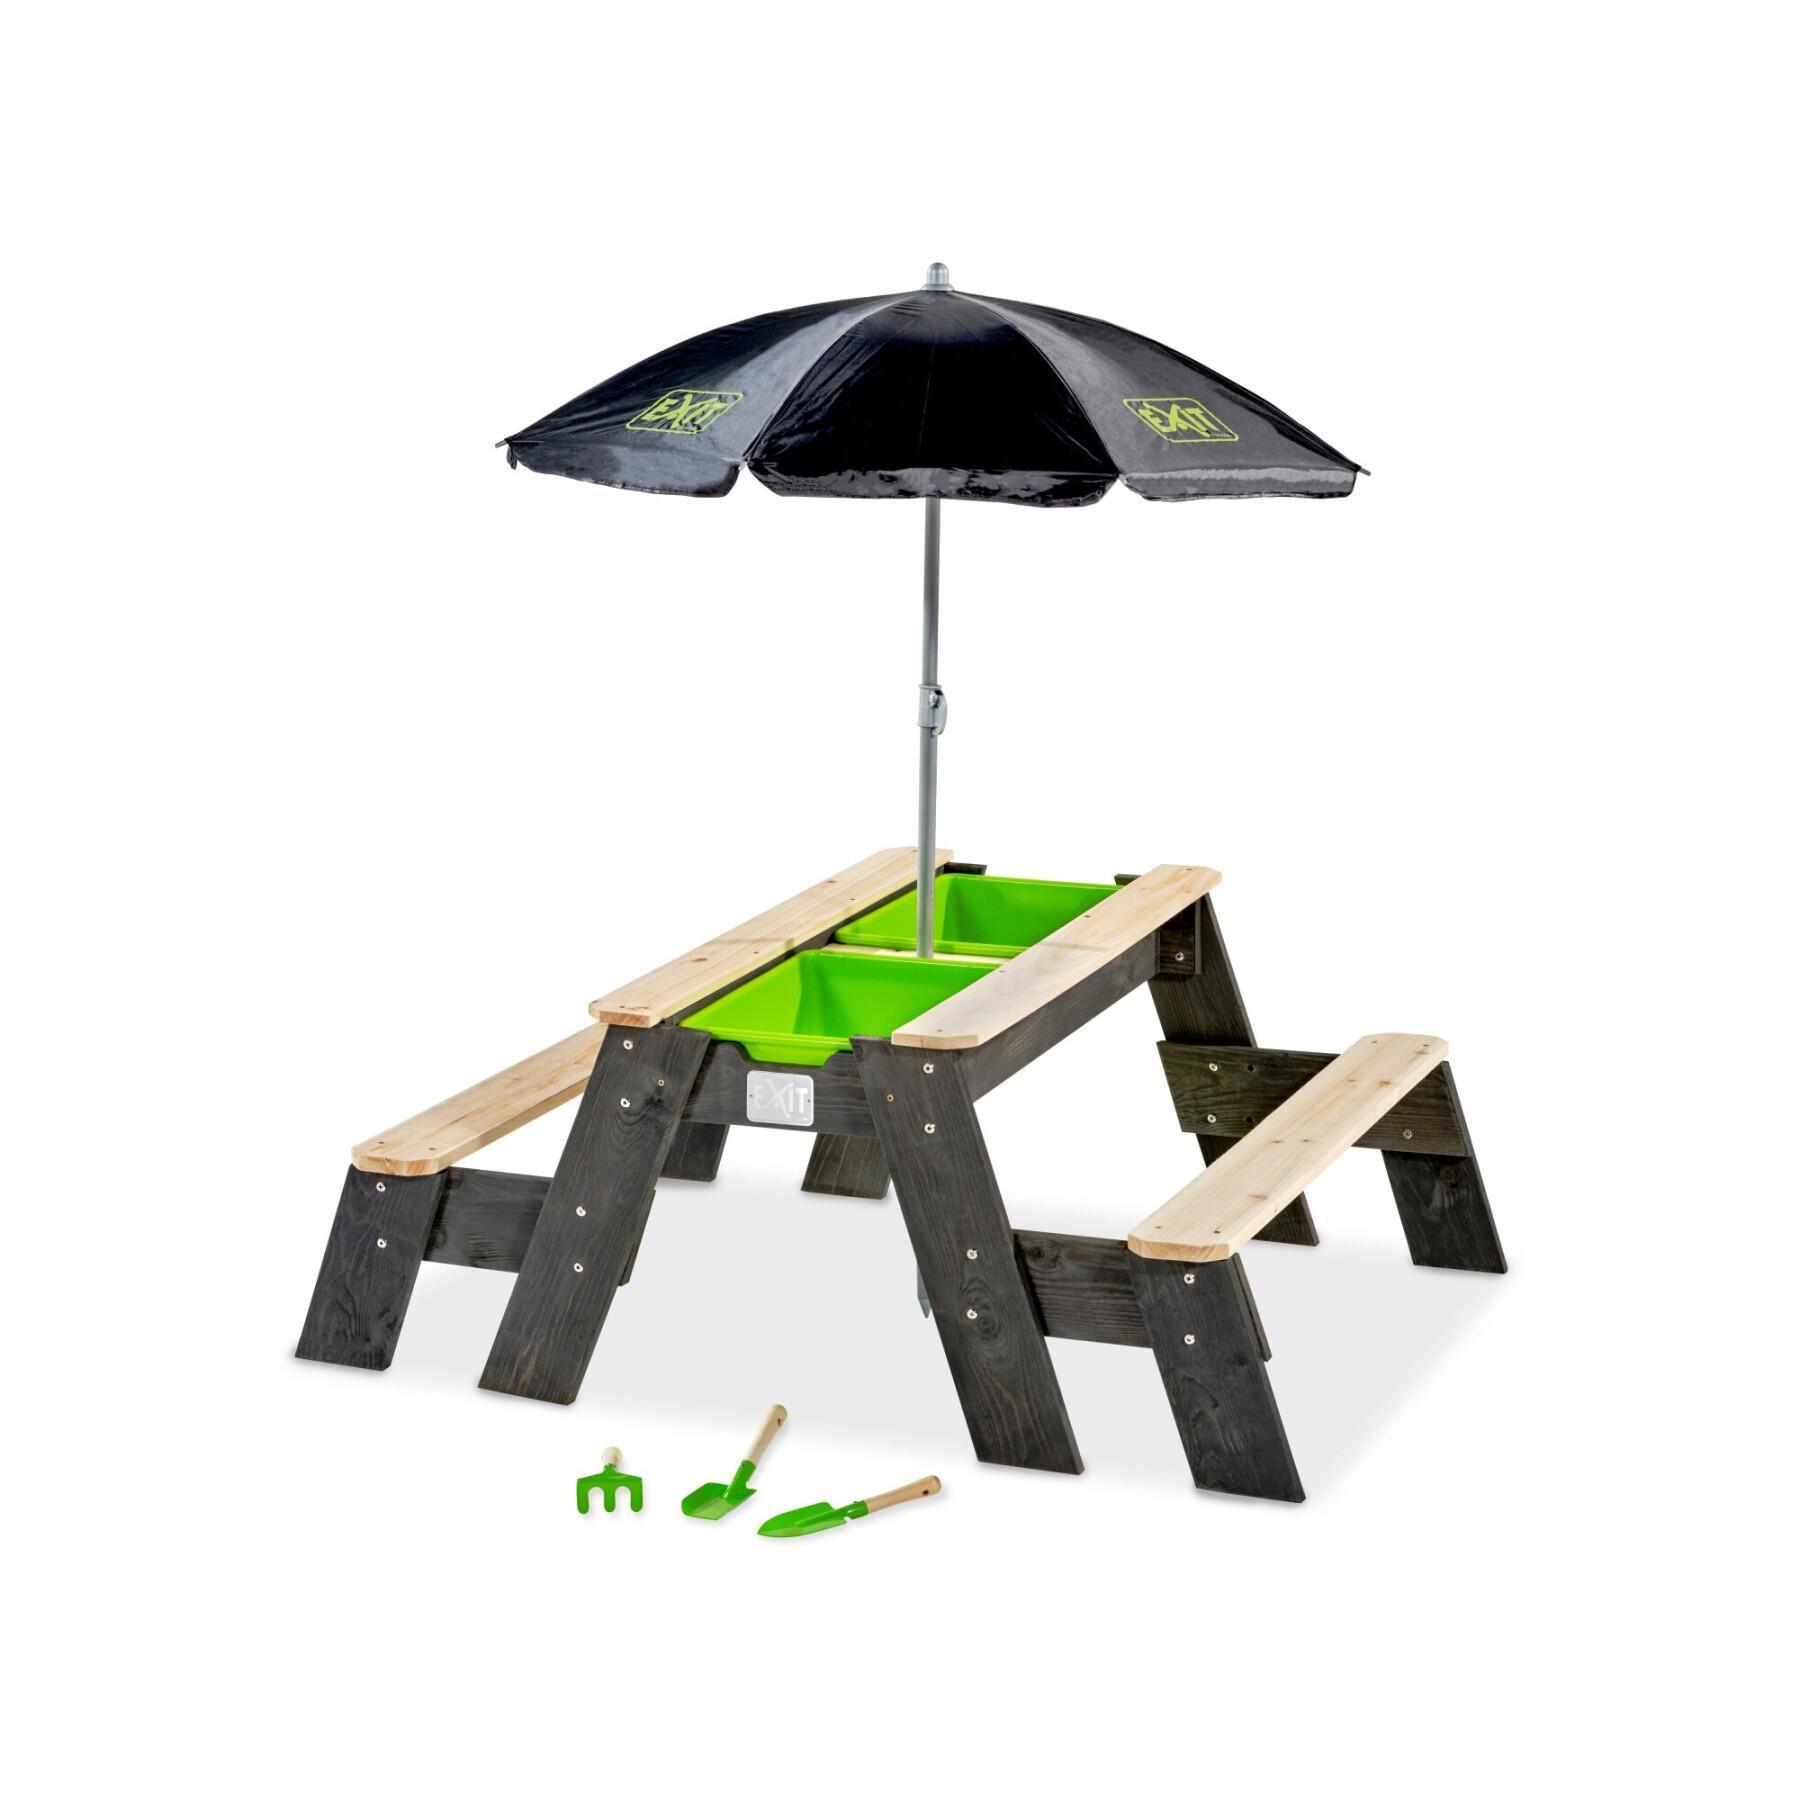 Stół do zabaw w piasku i wodzie oraz stół piknikowy (2 ławki) z parasolem i narzędziami ogrodniczymi Exit Toys Aksent